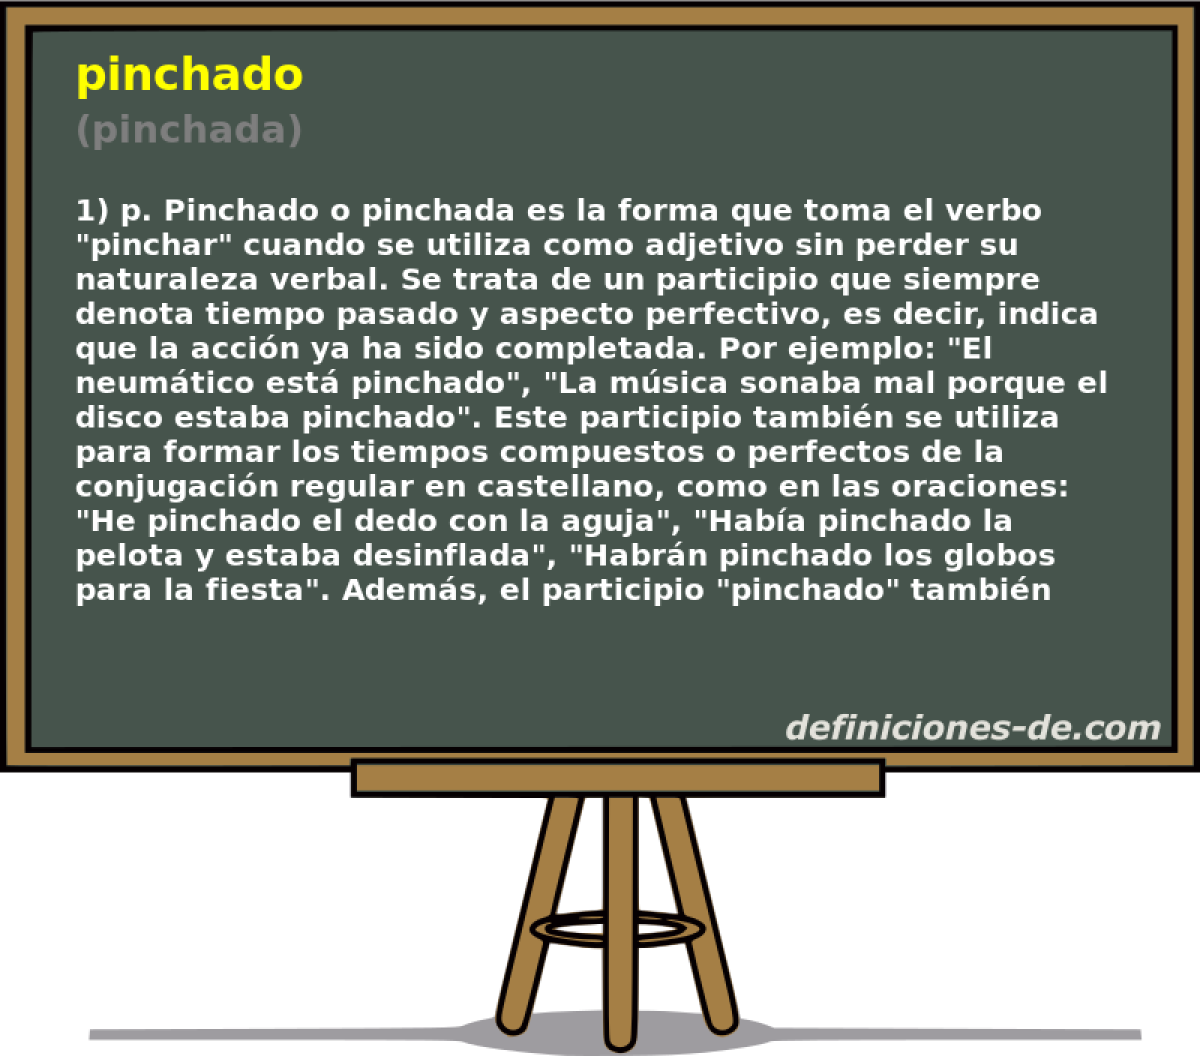 pinchado (pinchada)